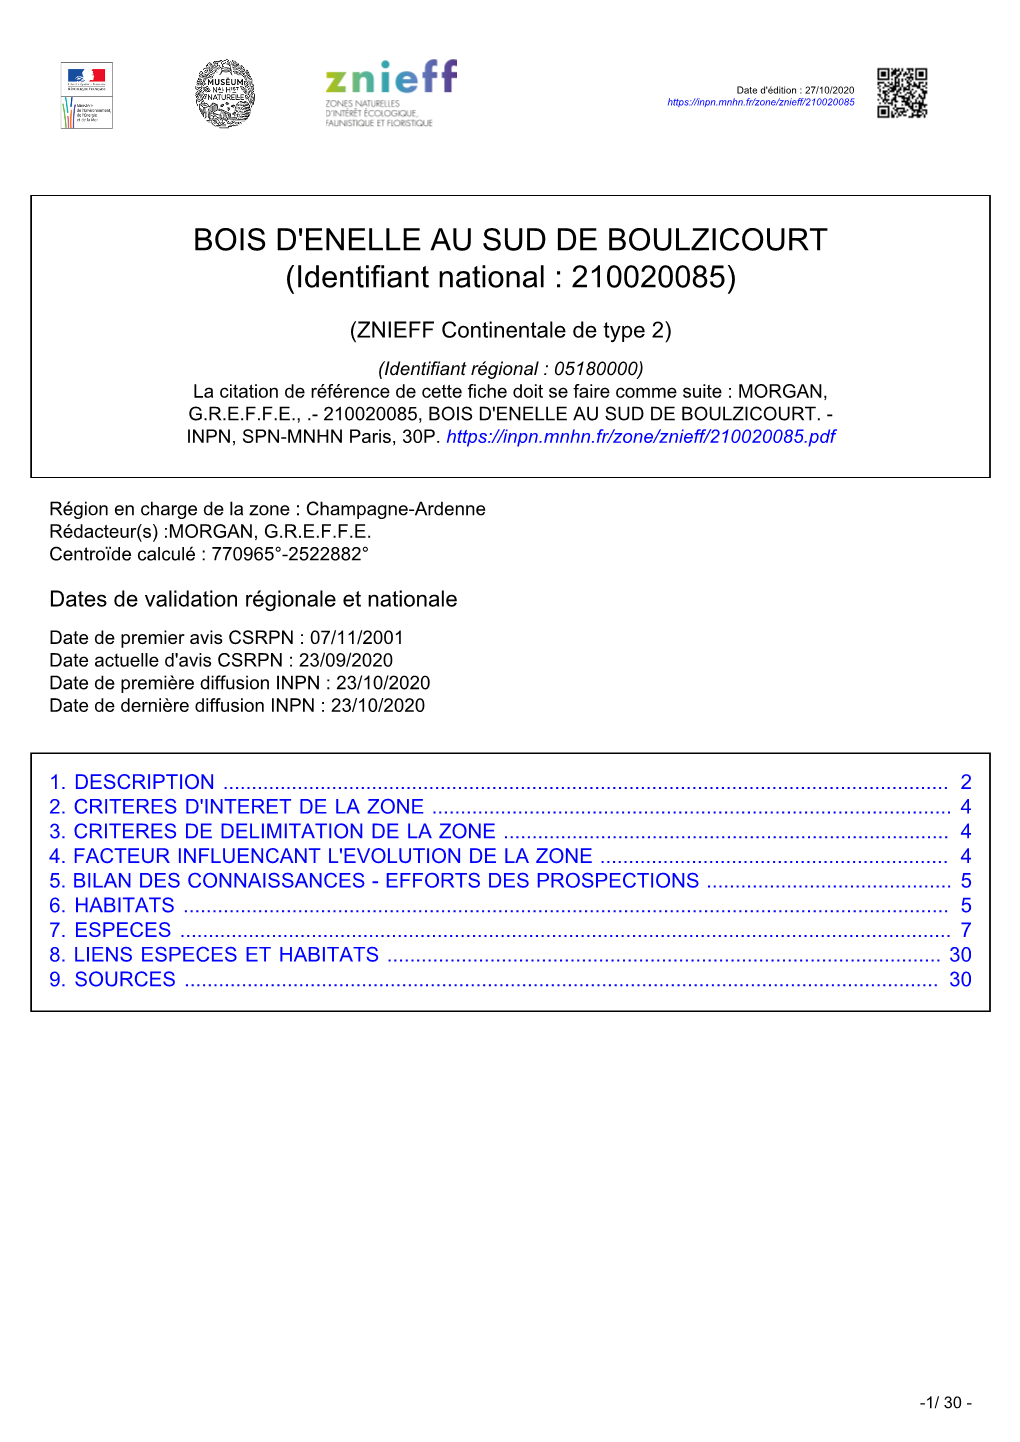 BOIS D'enelle AU SUD DE BOULZICOURT (Identifiant National : 210020085)